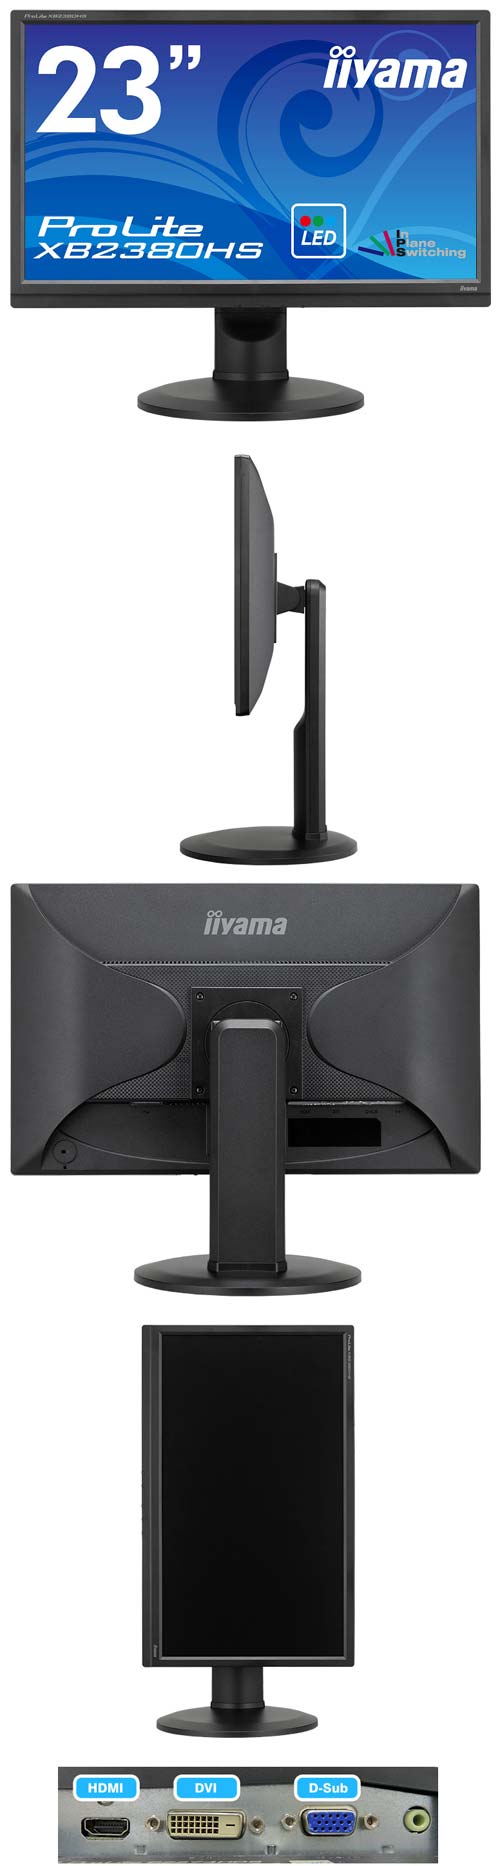 iiyama предлагает монитор ProLite XB2380HS